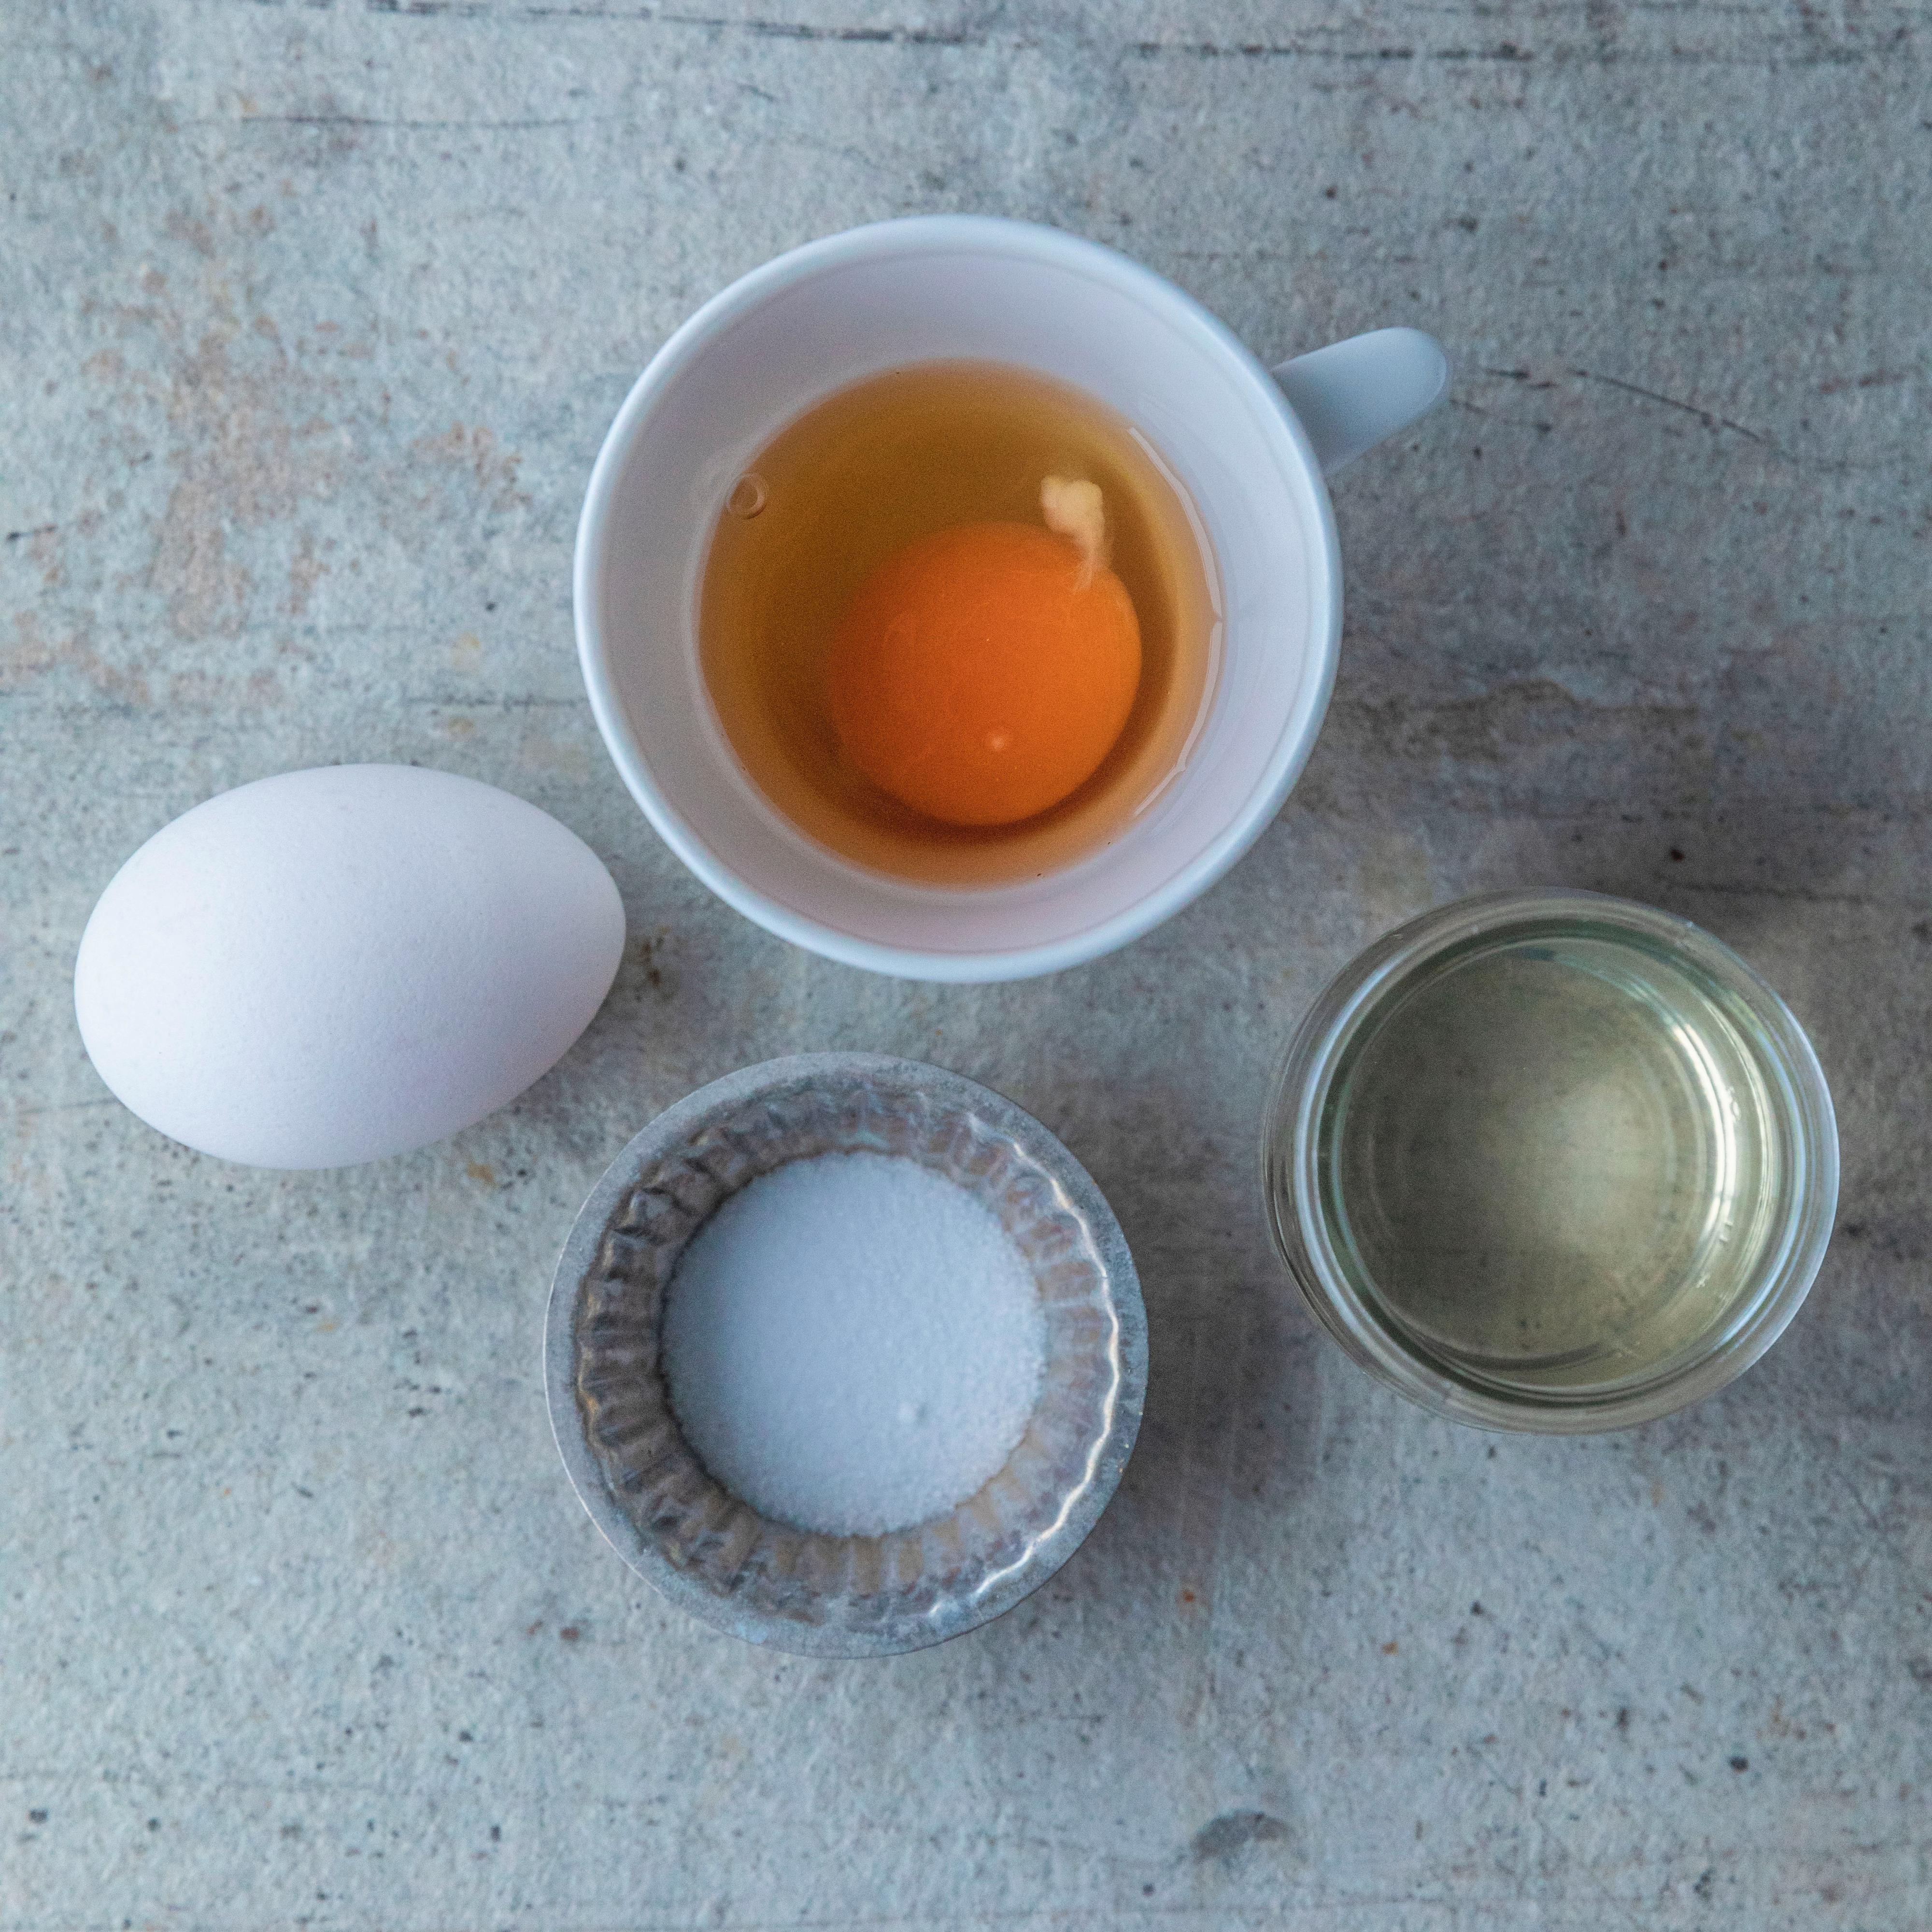 Pass på at eggene som skal posjeres er ferskest mulig, hvis ikke vil hviten flyte utover.